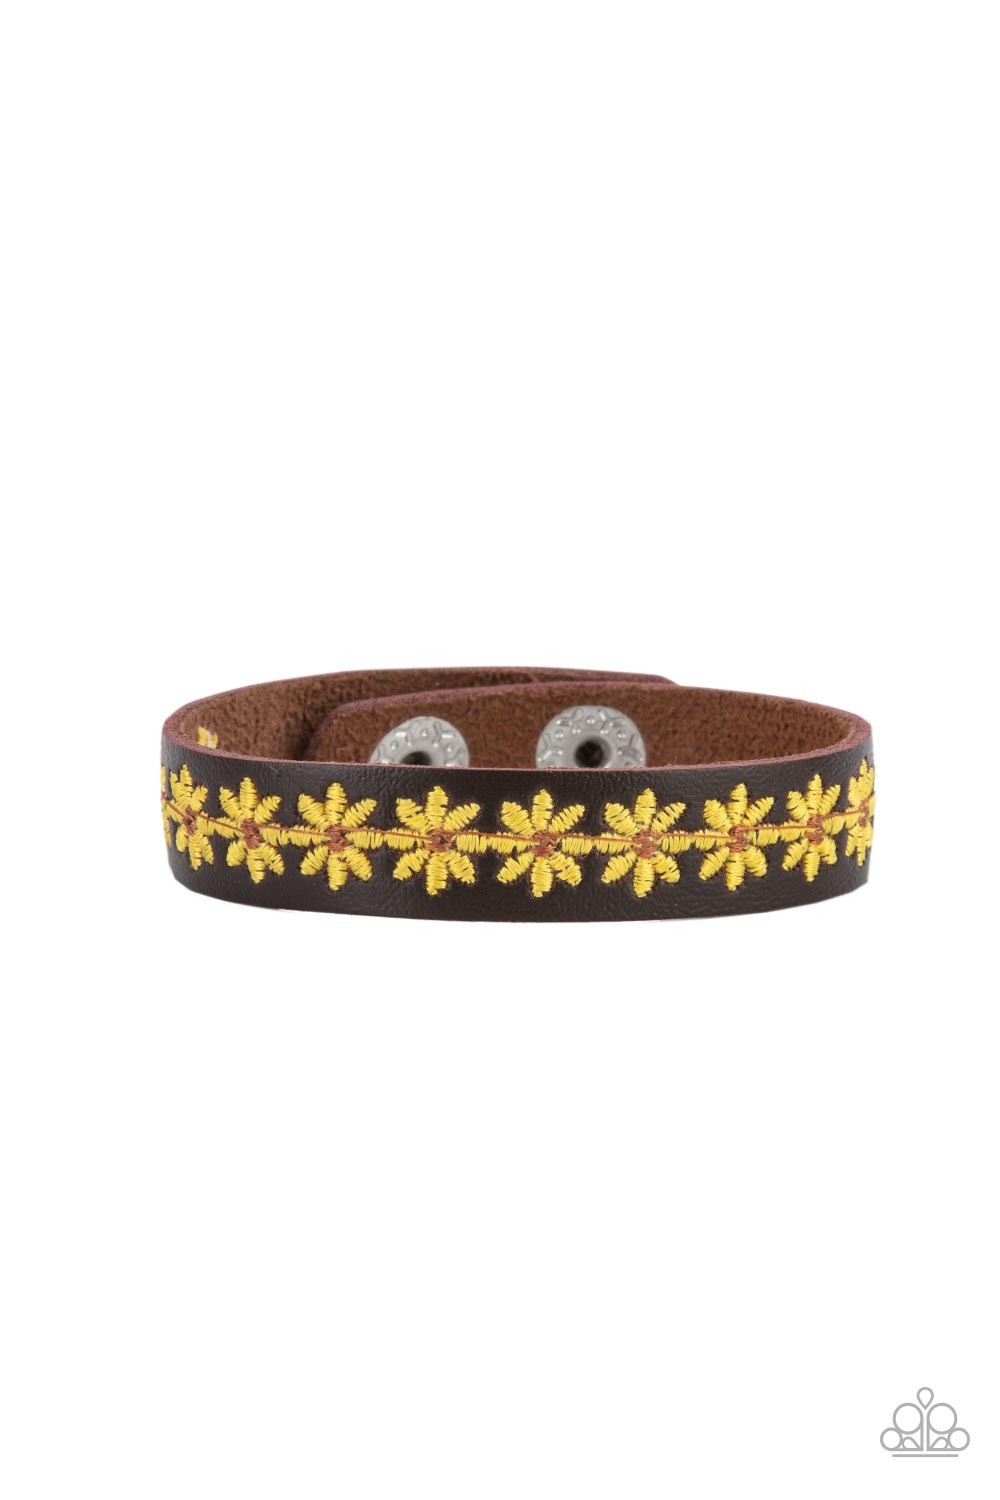 Wildflower Wayfarer - Paparazzi - Yellow Stitched Flowers Brown Leather Snap Bracelet